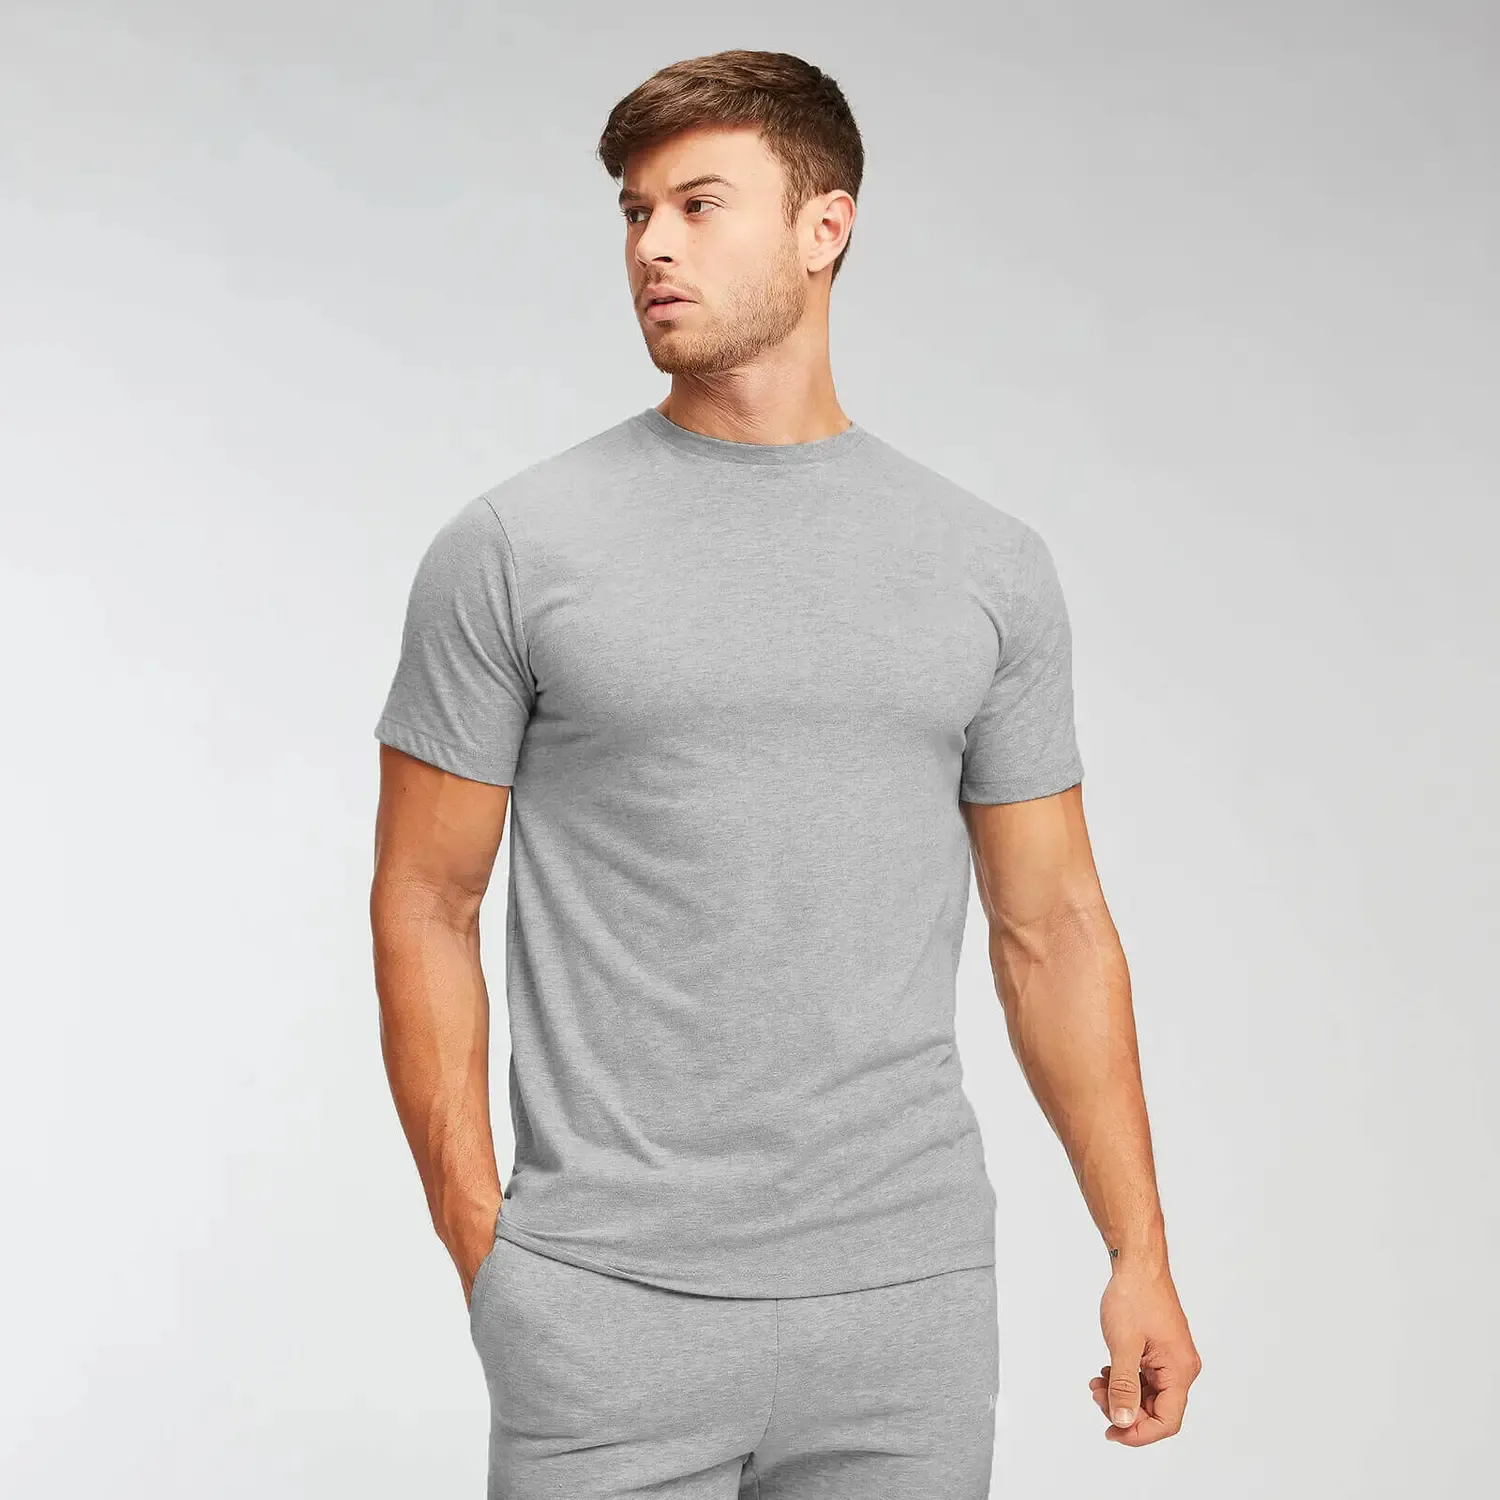 Wholesale High Quality Basic Plain Slim Fit Custom LOGO Mens Gym T Shirt